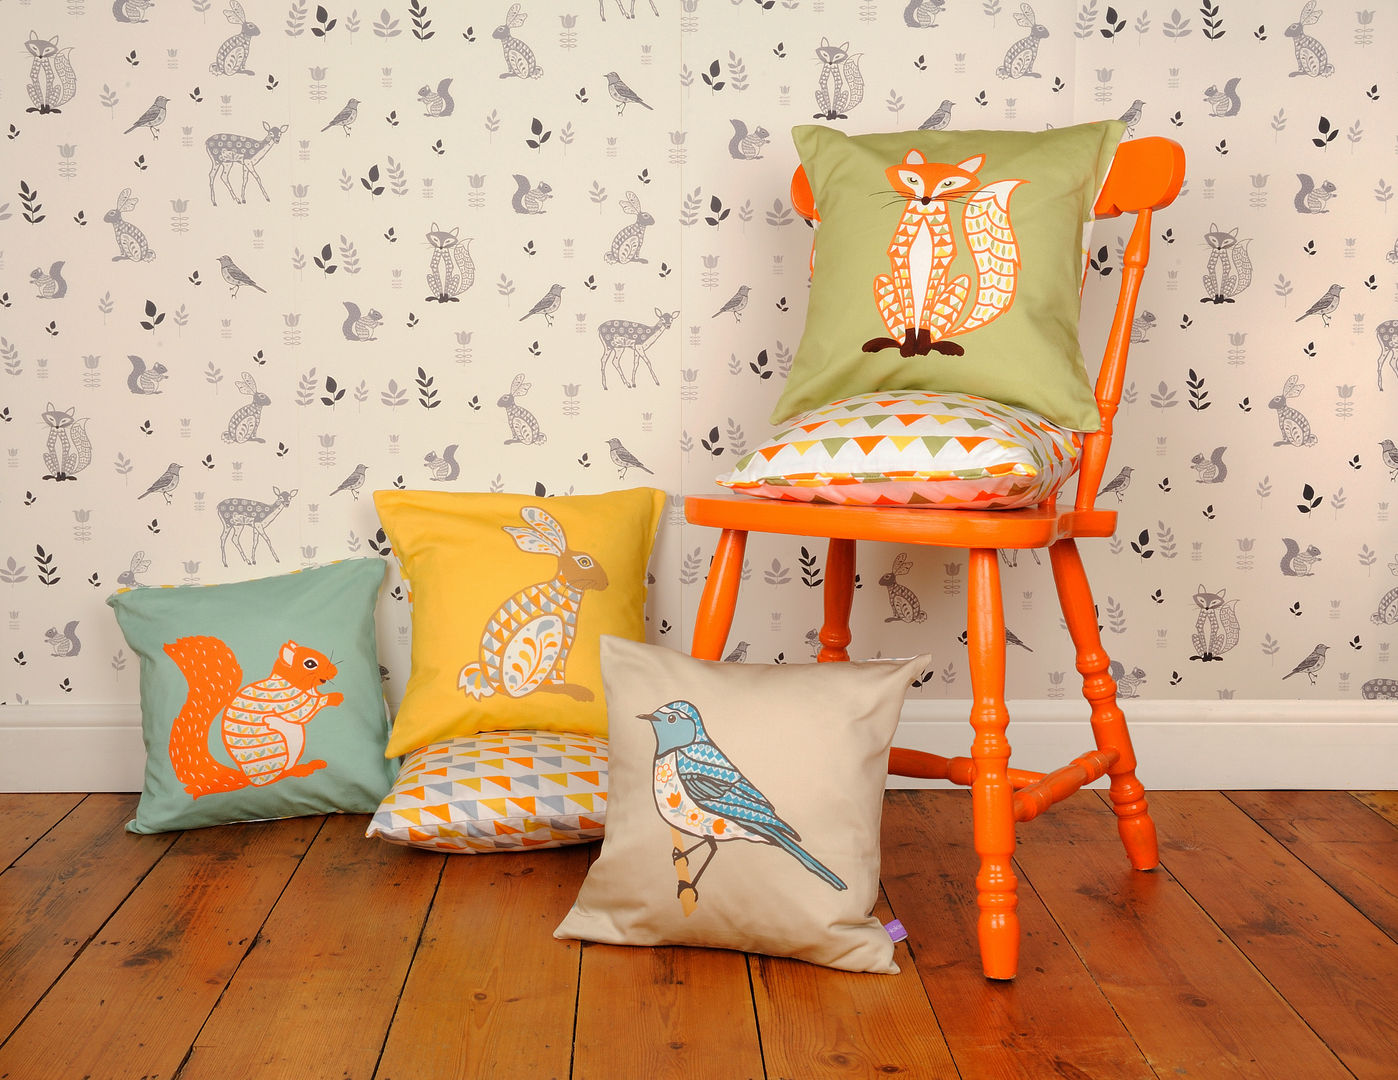 Decorative Animal Cushions and Wallpaper Helen Gordon Dormitorios de estilo escandinavo Textiles